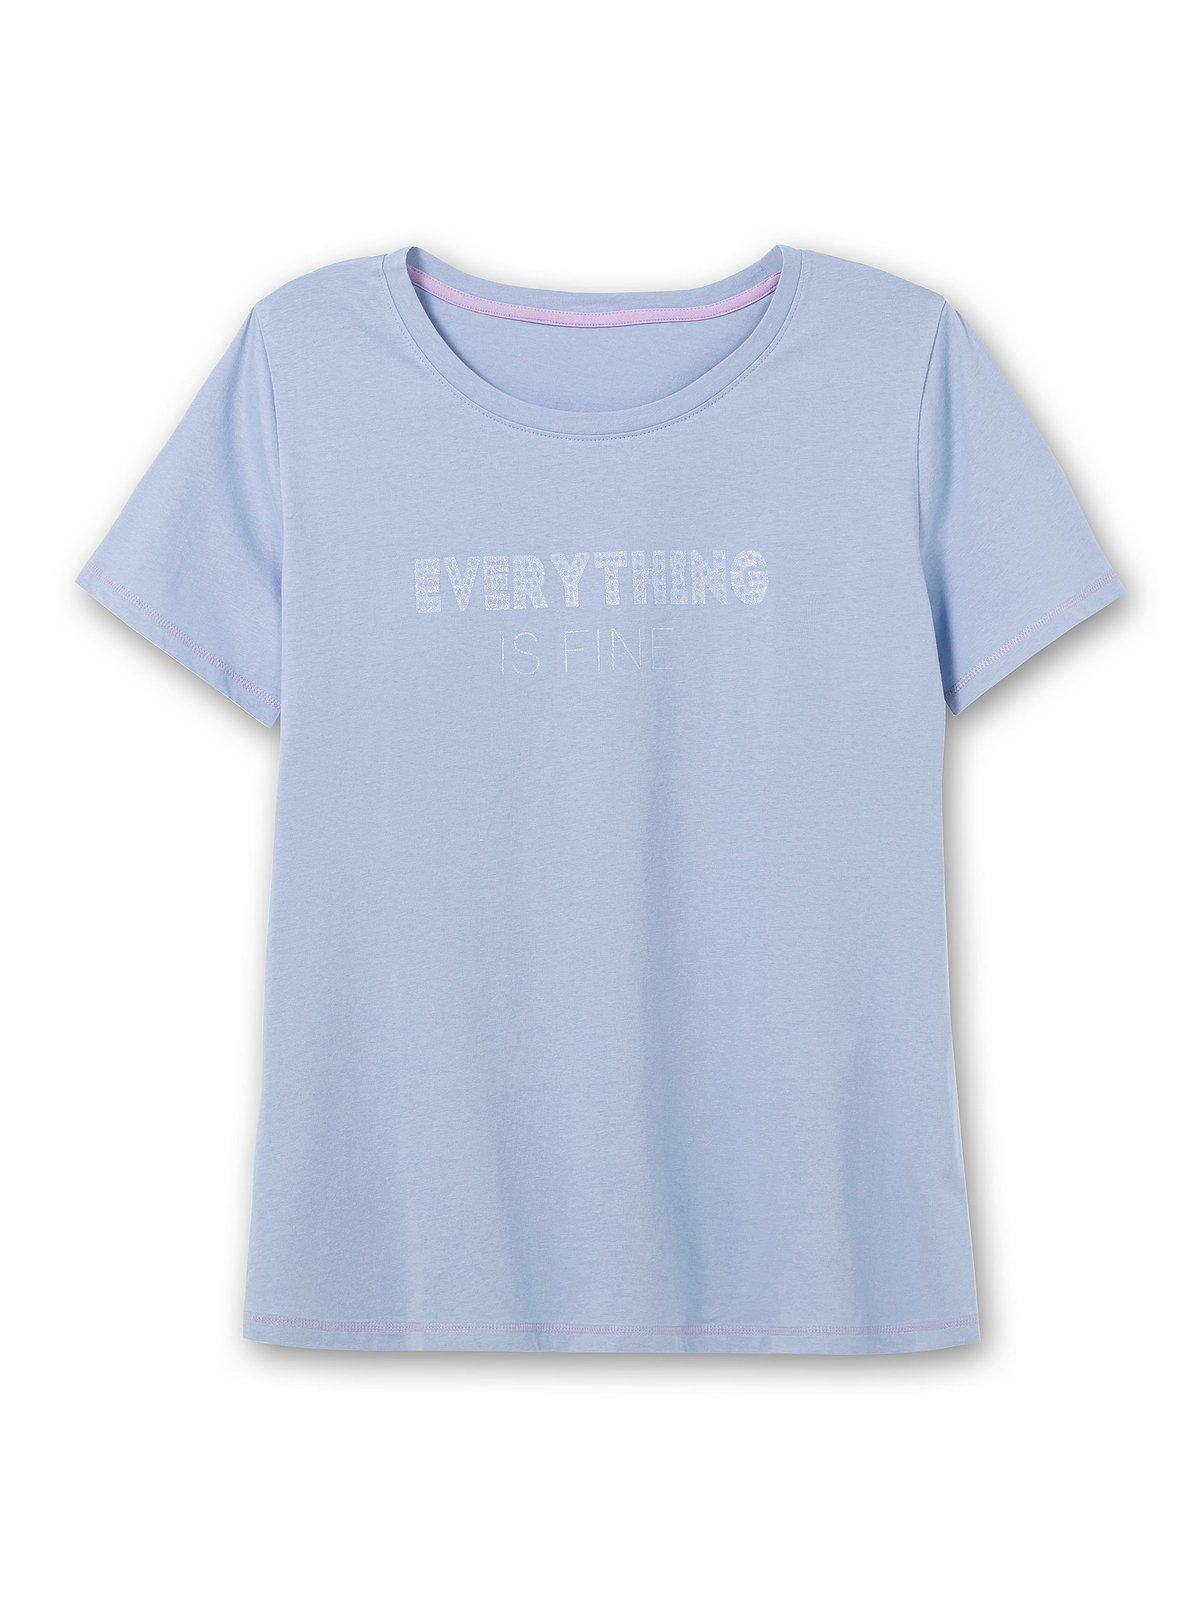 Sheego T-Shirt Große Größen leicht mittelblau tailliert Wordingprint, bedruckt mit